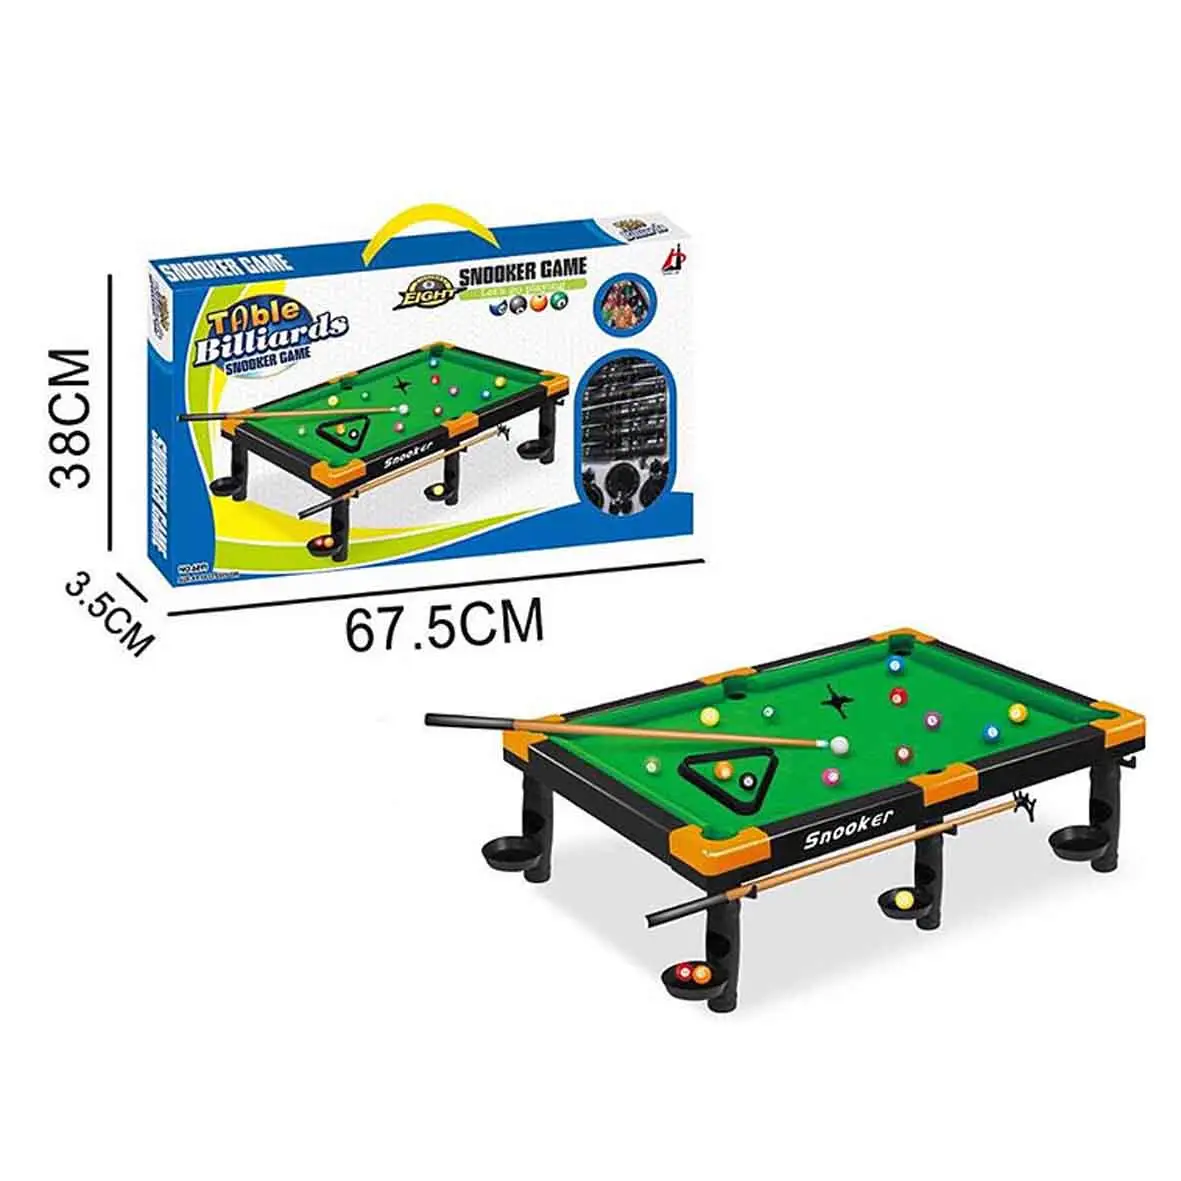 Jinming Kinder Snooker Tischs piel Spielzeug Set Indoor Outdoor Tisch Billard Sportspiel zeug